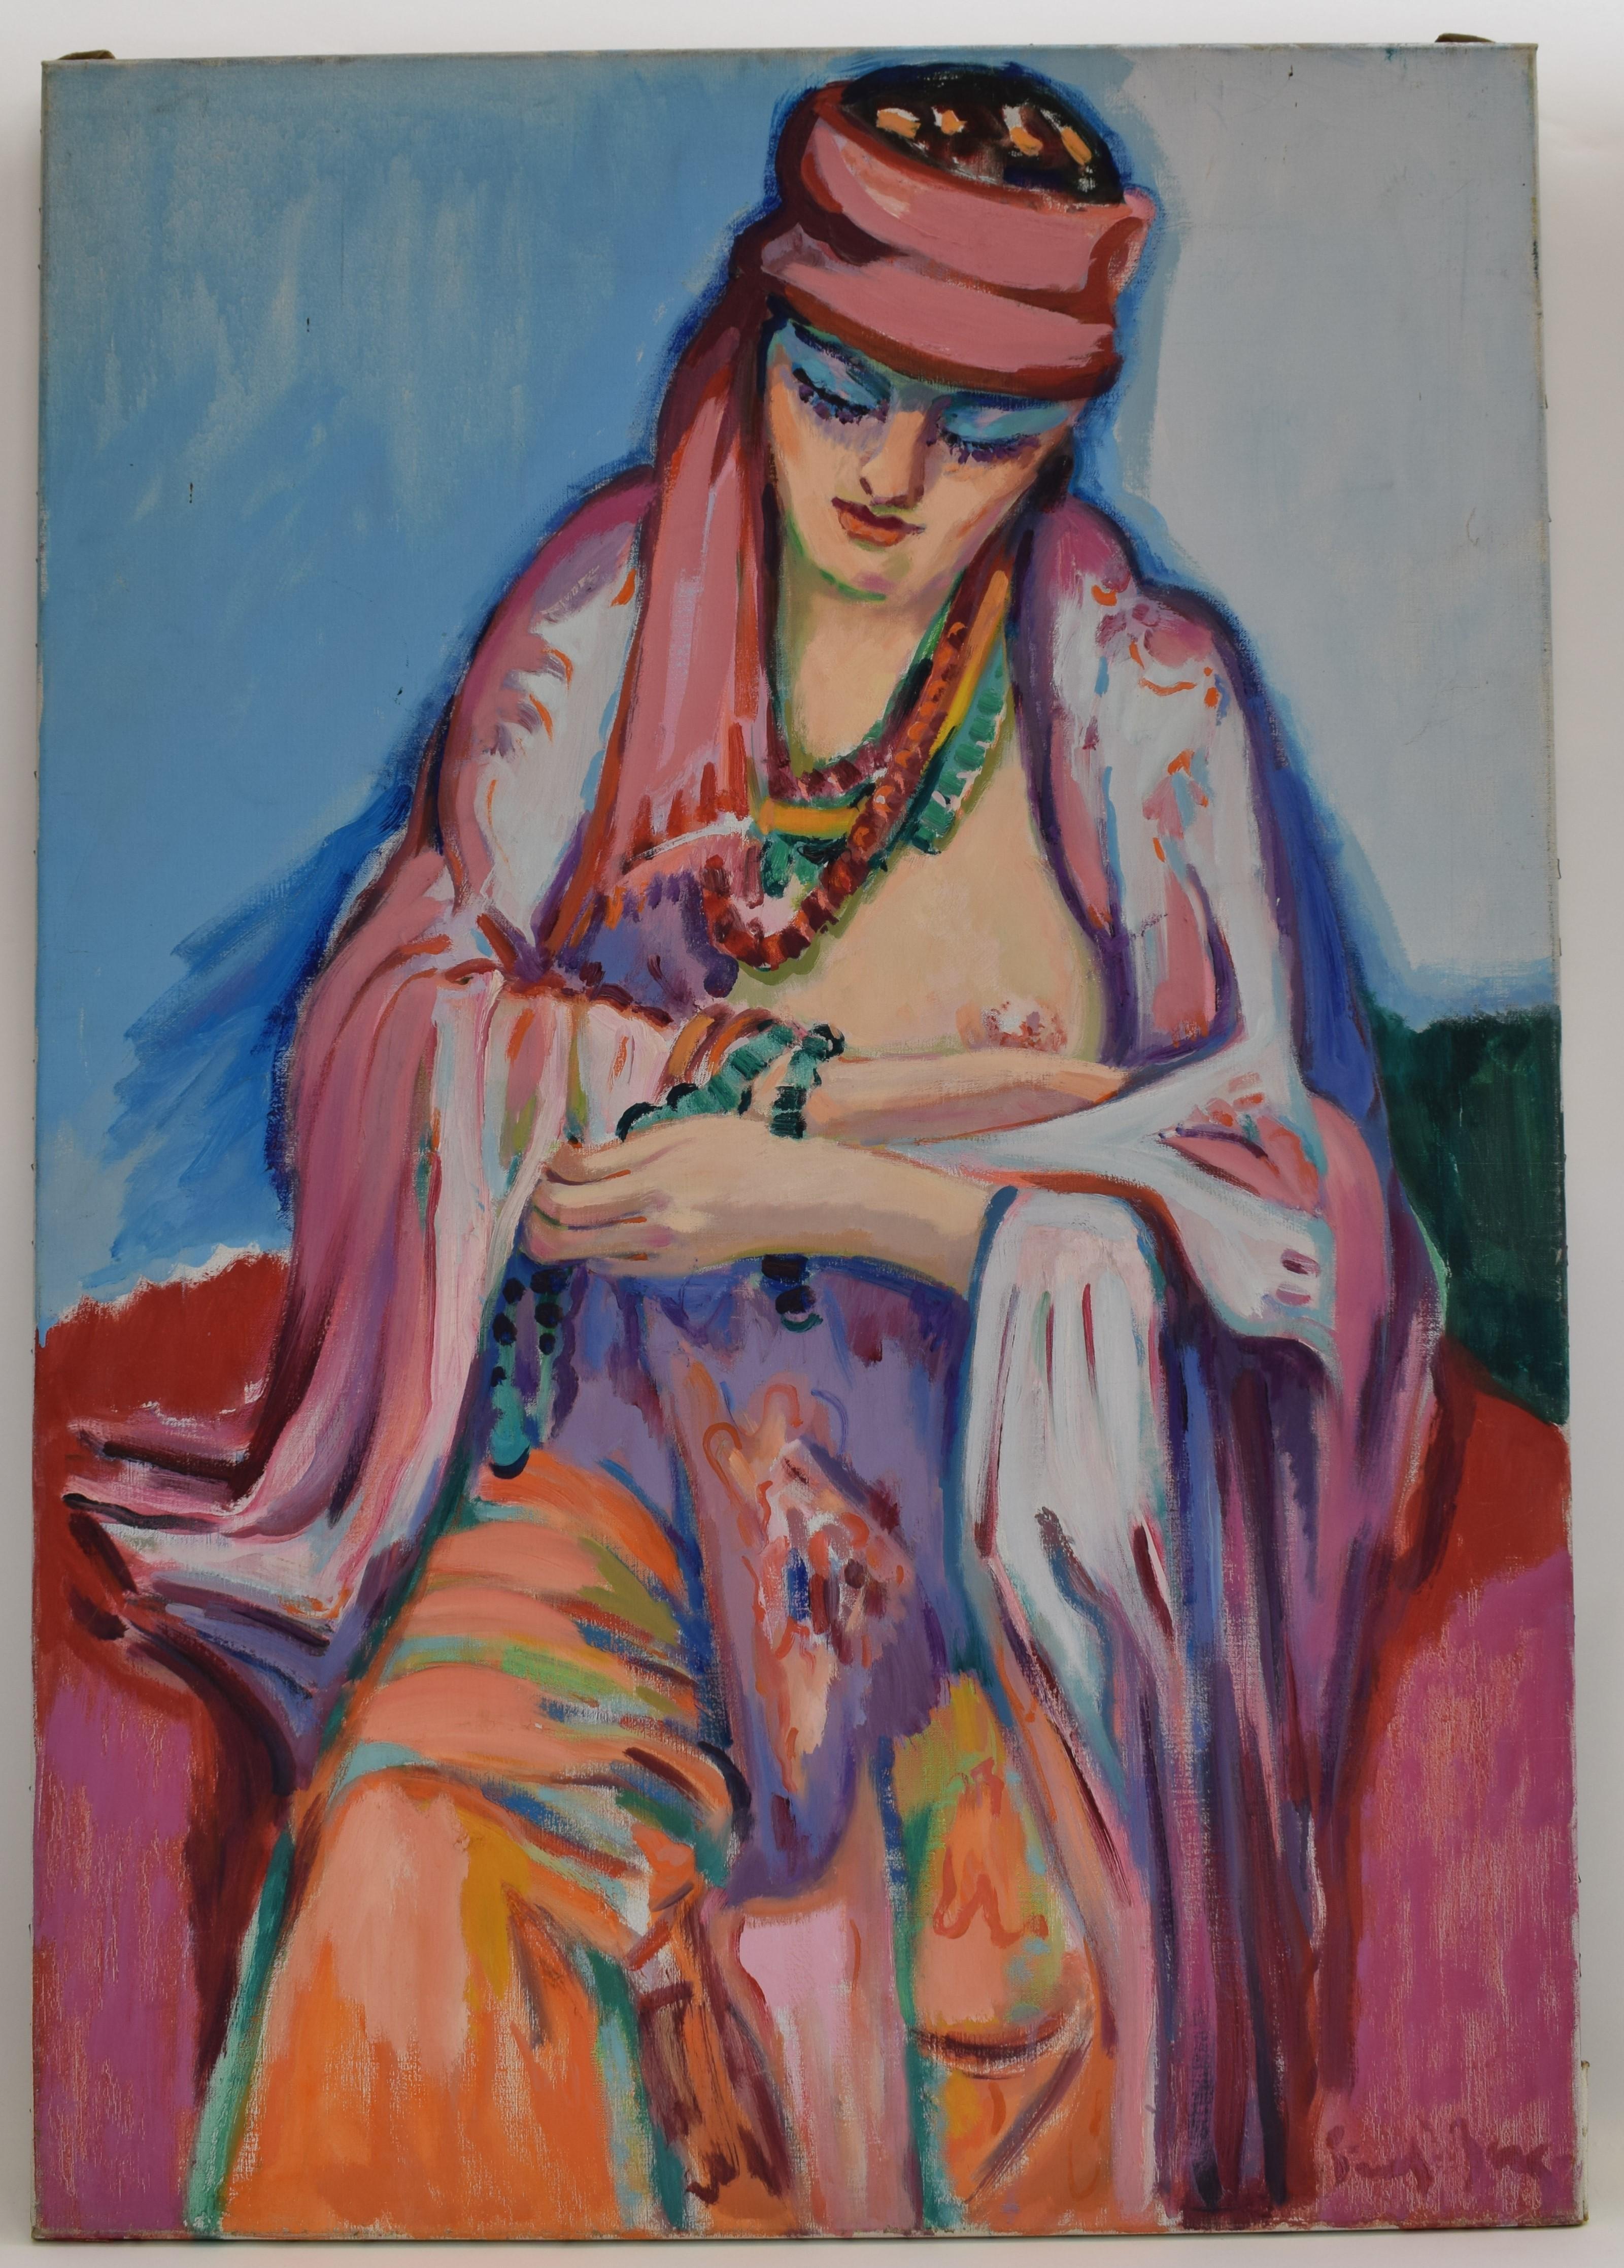 Freek van den Berg Portrait Painting - The pink scarf - Oil Paint on Canvas, Fauvist, Dutch Artist, Portrait, Painting